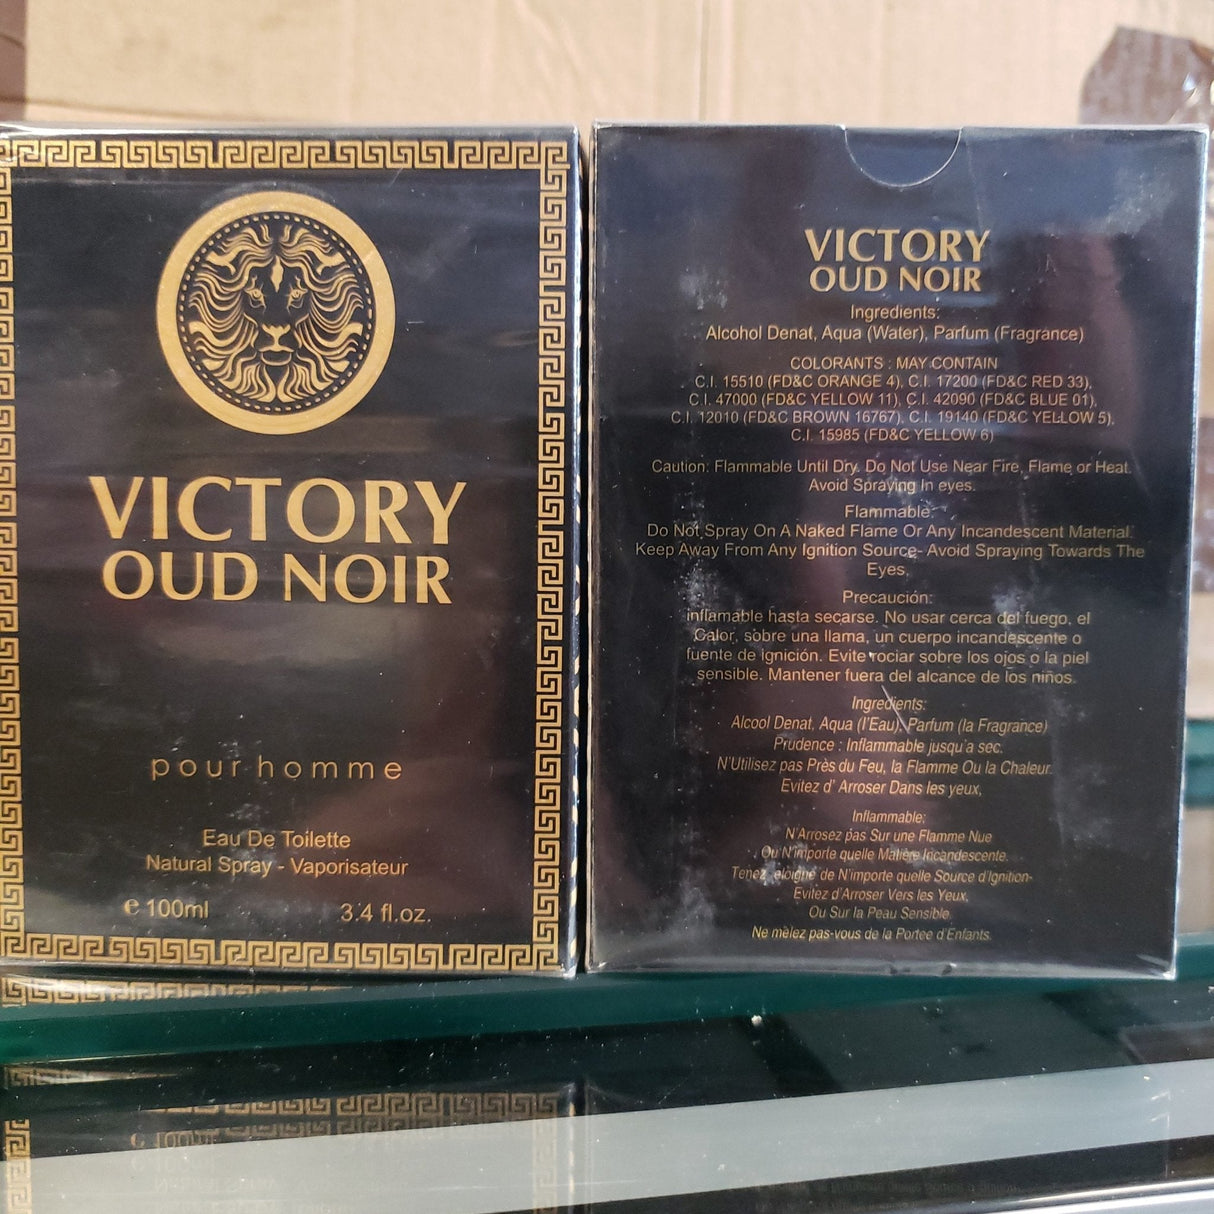 Victory Oud Noir For Men 3.4 oz - BELLEZA'S - Victory Oud Noir For Men 3.4 oz - BELLEZA'S - 9260